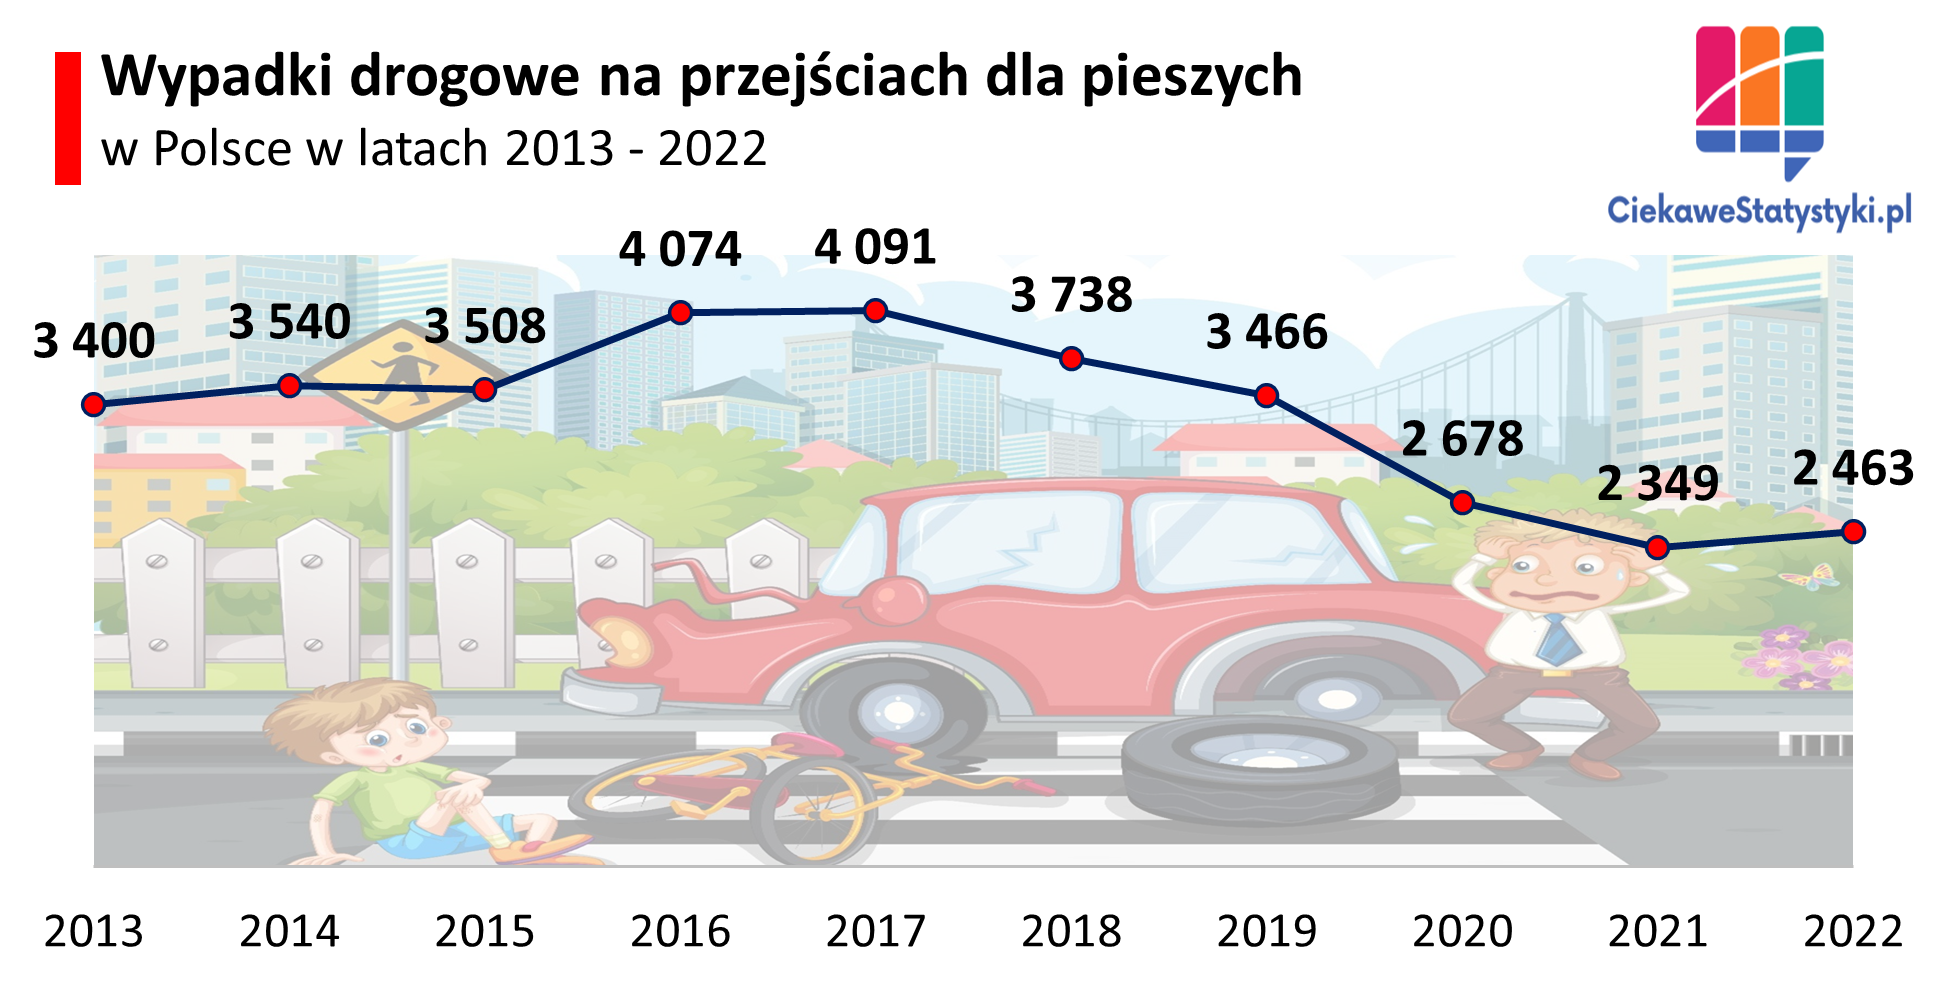 Wykres przedstawia ile jest wypadków drogowych w Polsce na przejściu dla pieszych